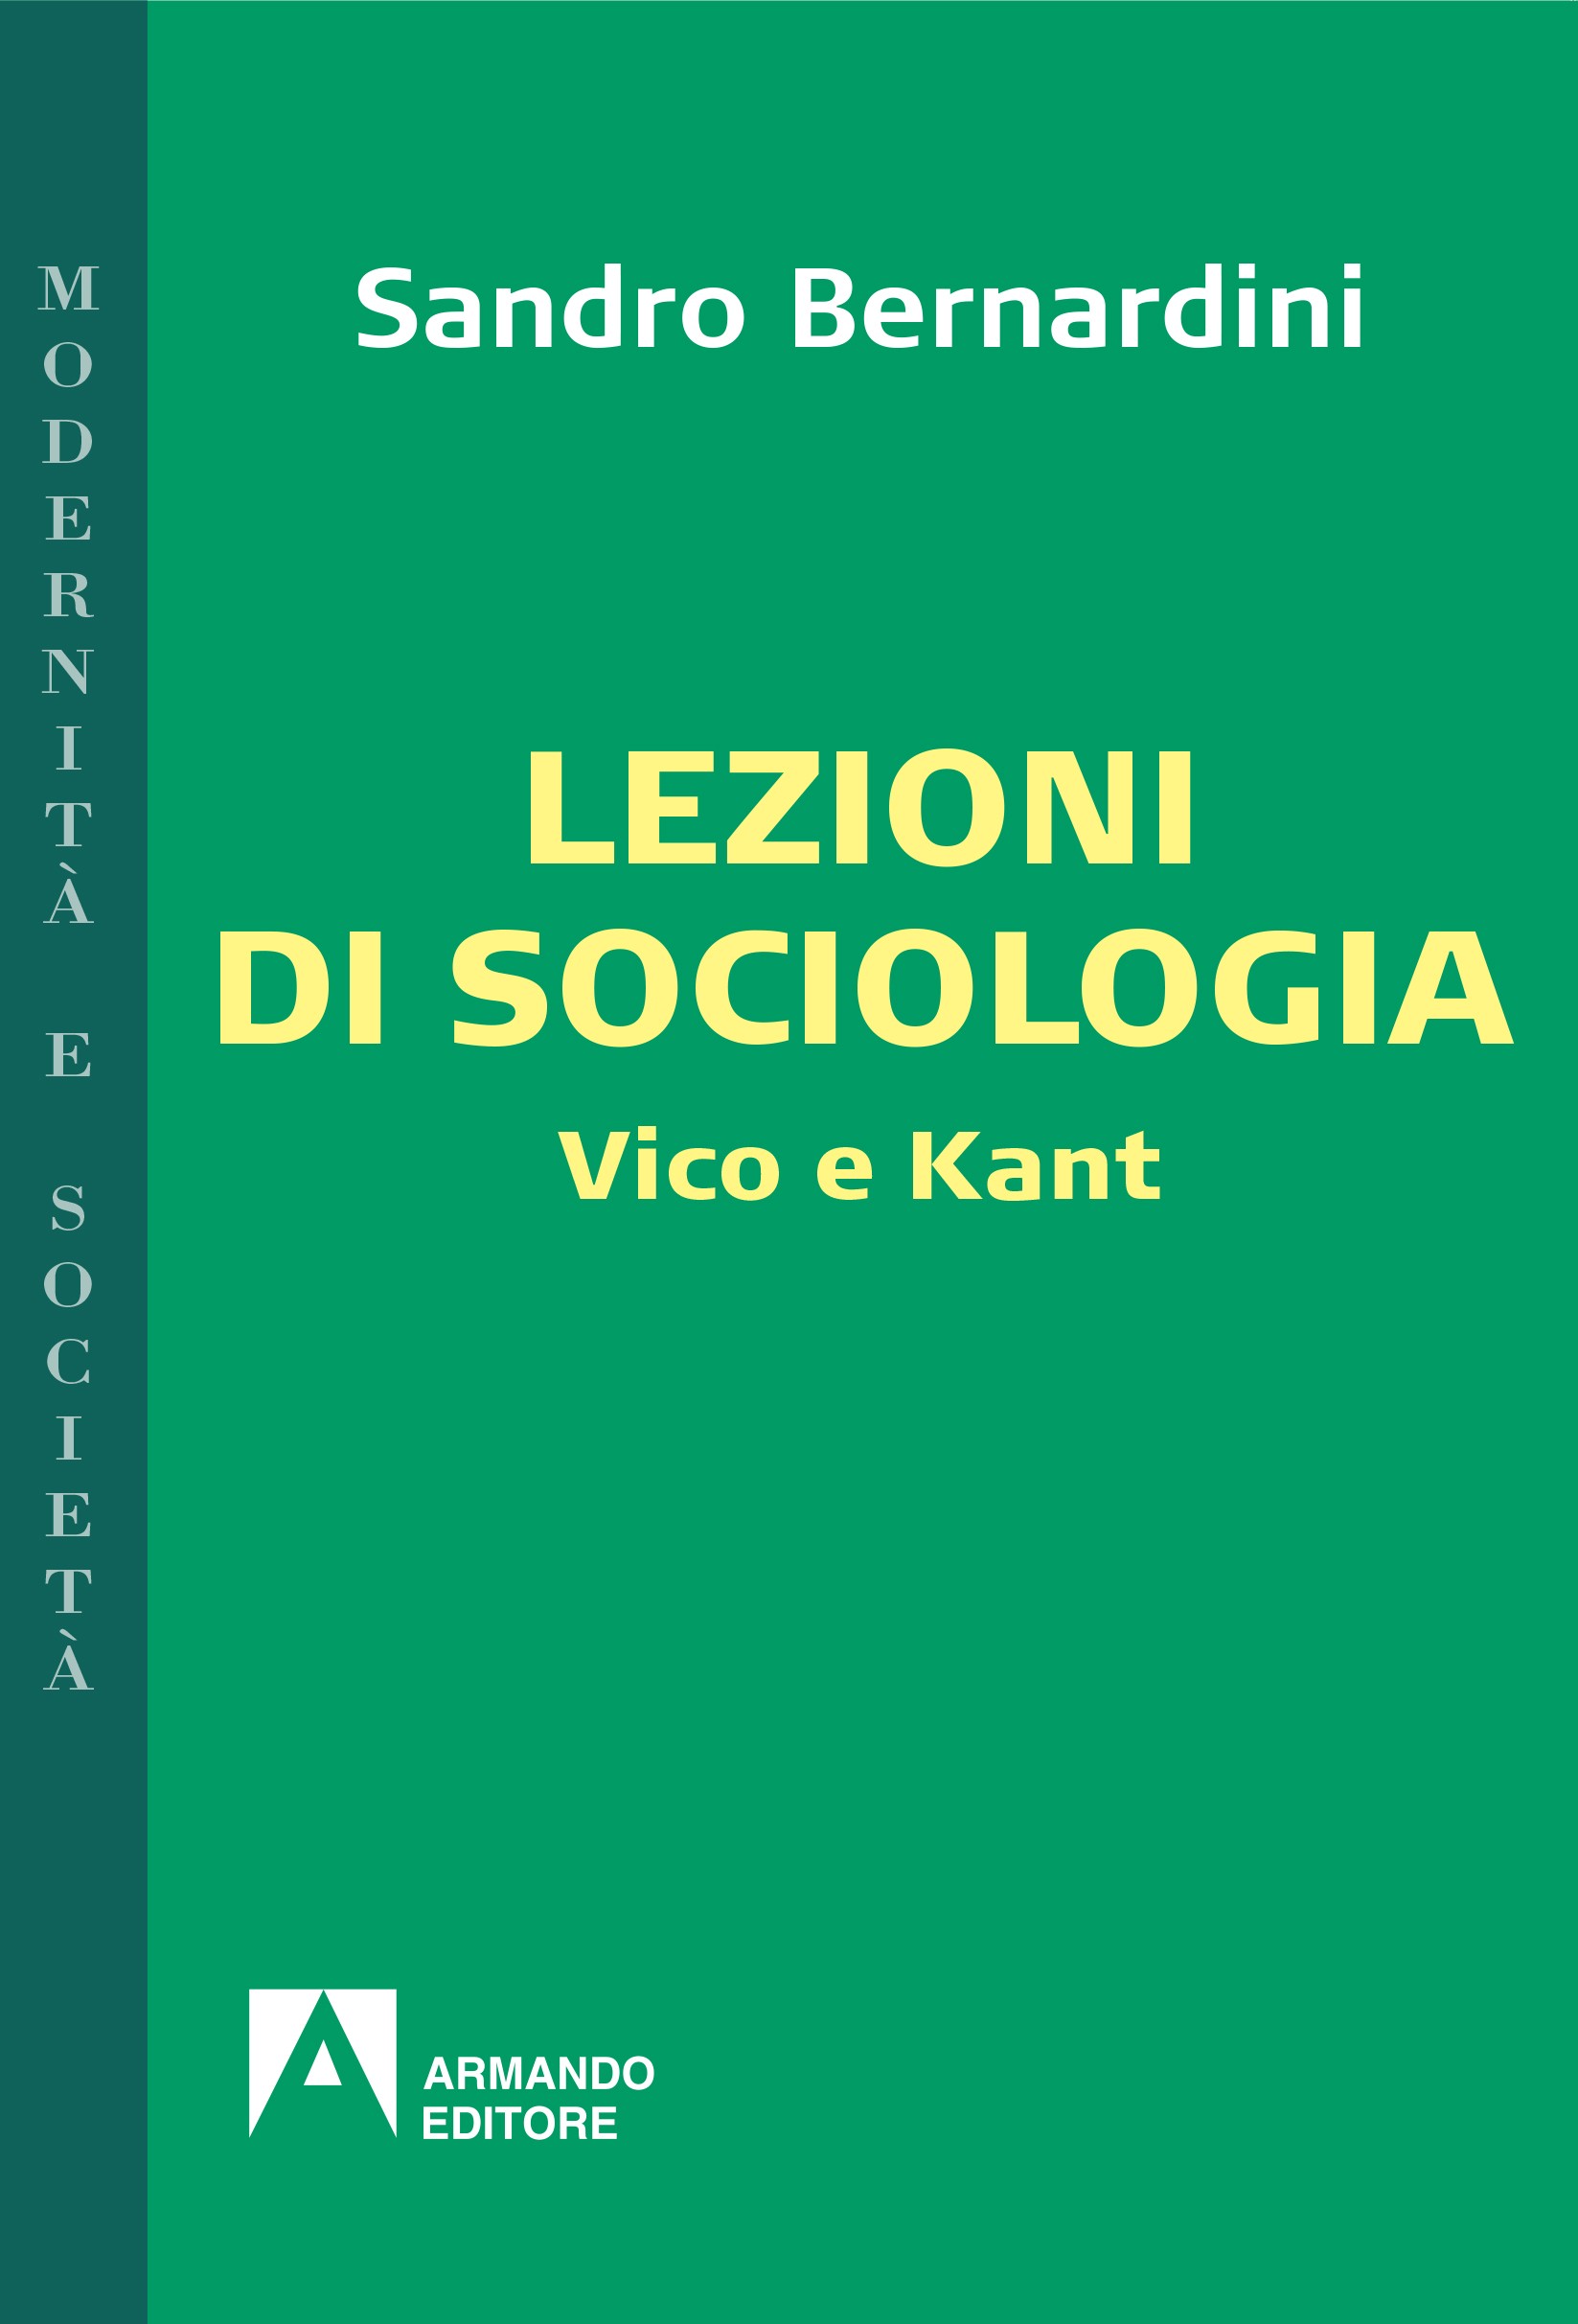 Lezioni di sociologia - Librerie.coop